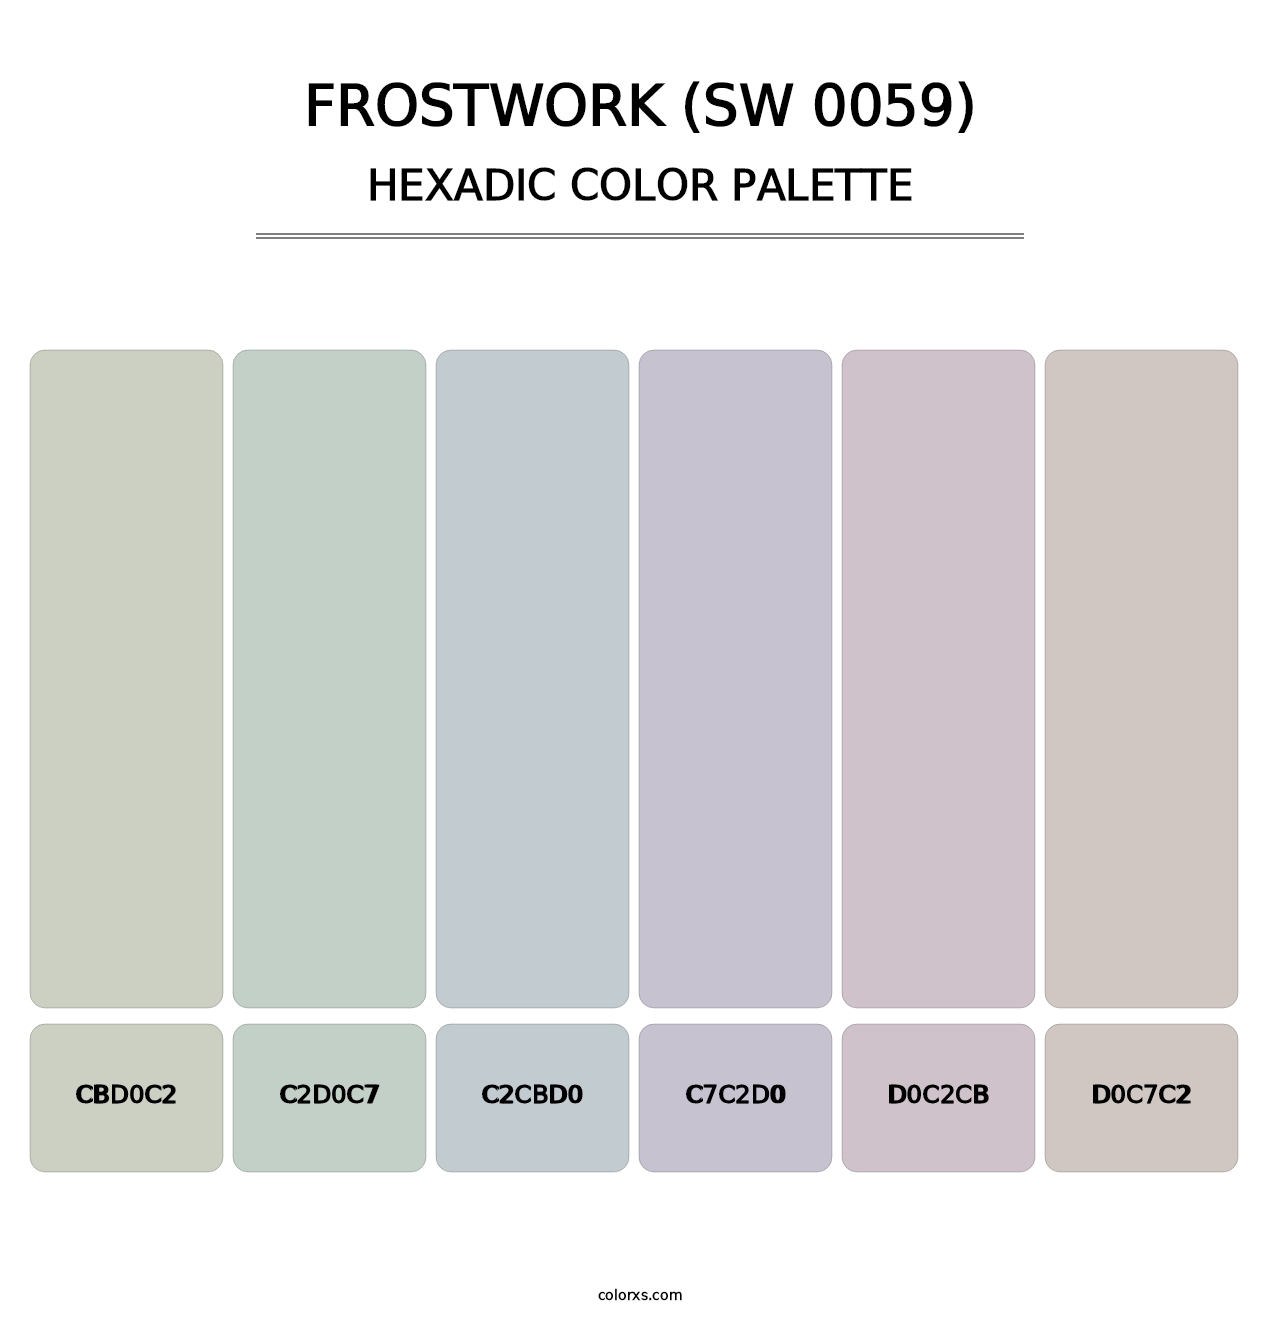 Frostwork (SW 0059) - Hexadic Color Palette